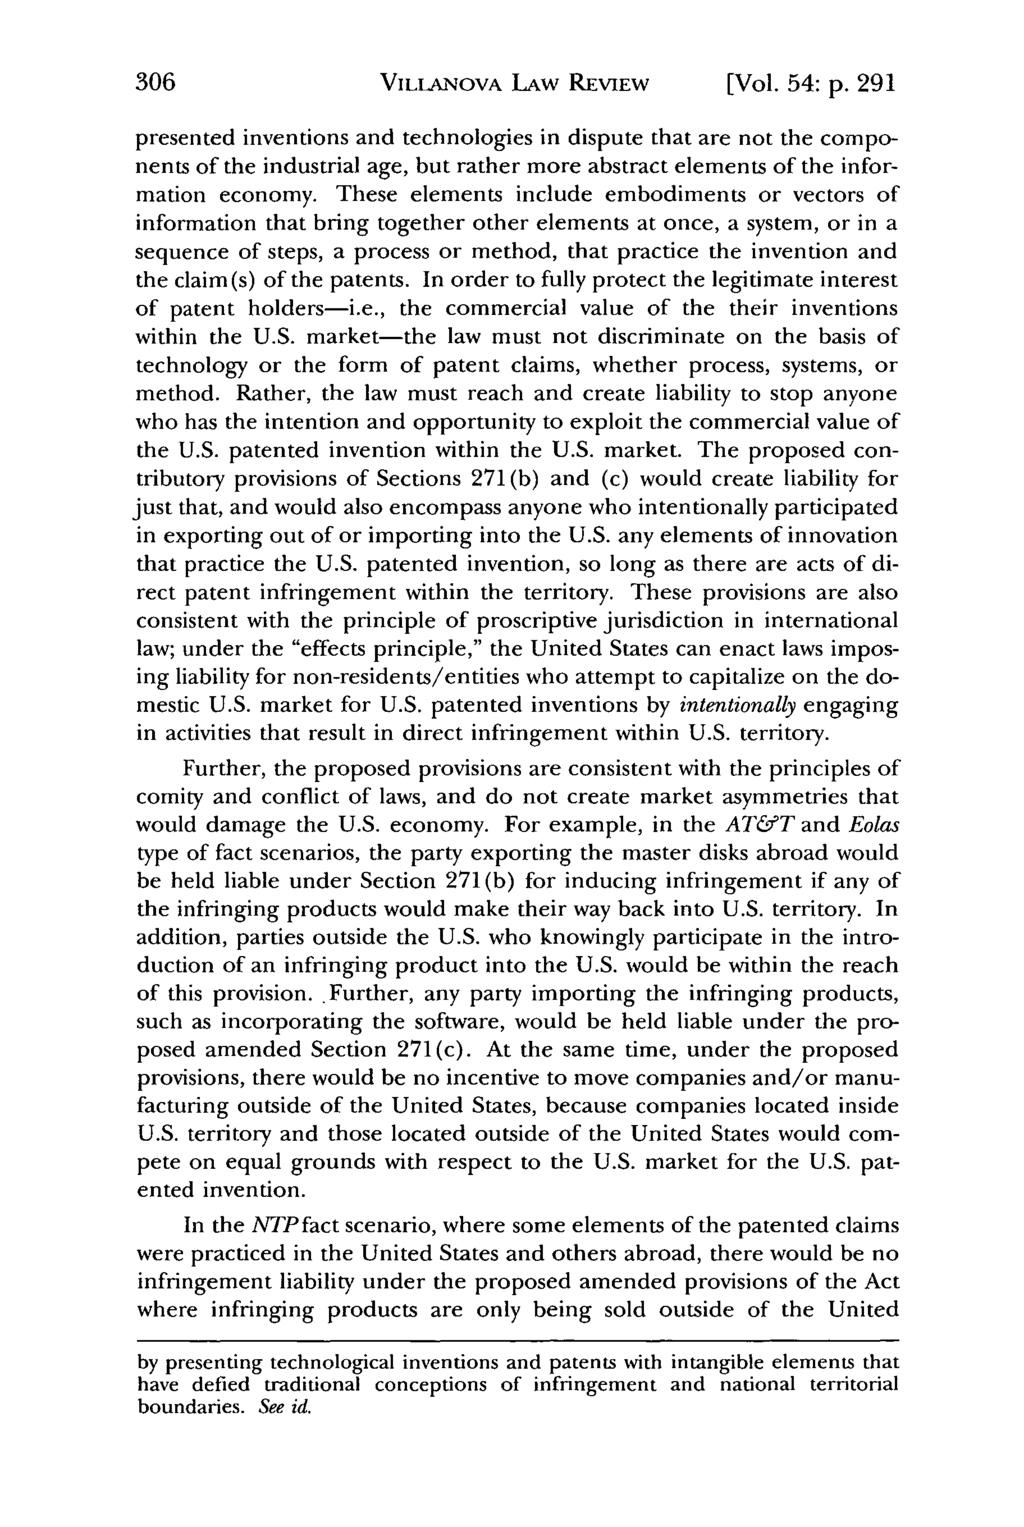 Villanova Law Review, Vol. 54, Iss. 2 [2009], Art. 3 VILLANOVA LAW REVIEW [Vol. 54: p.